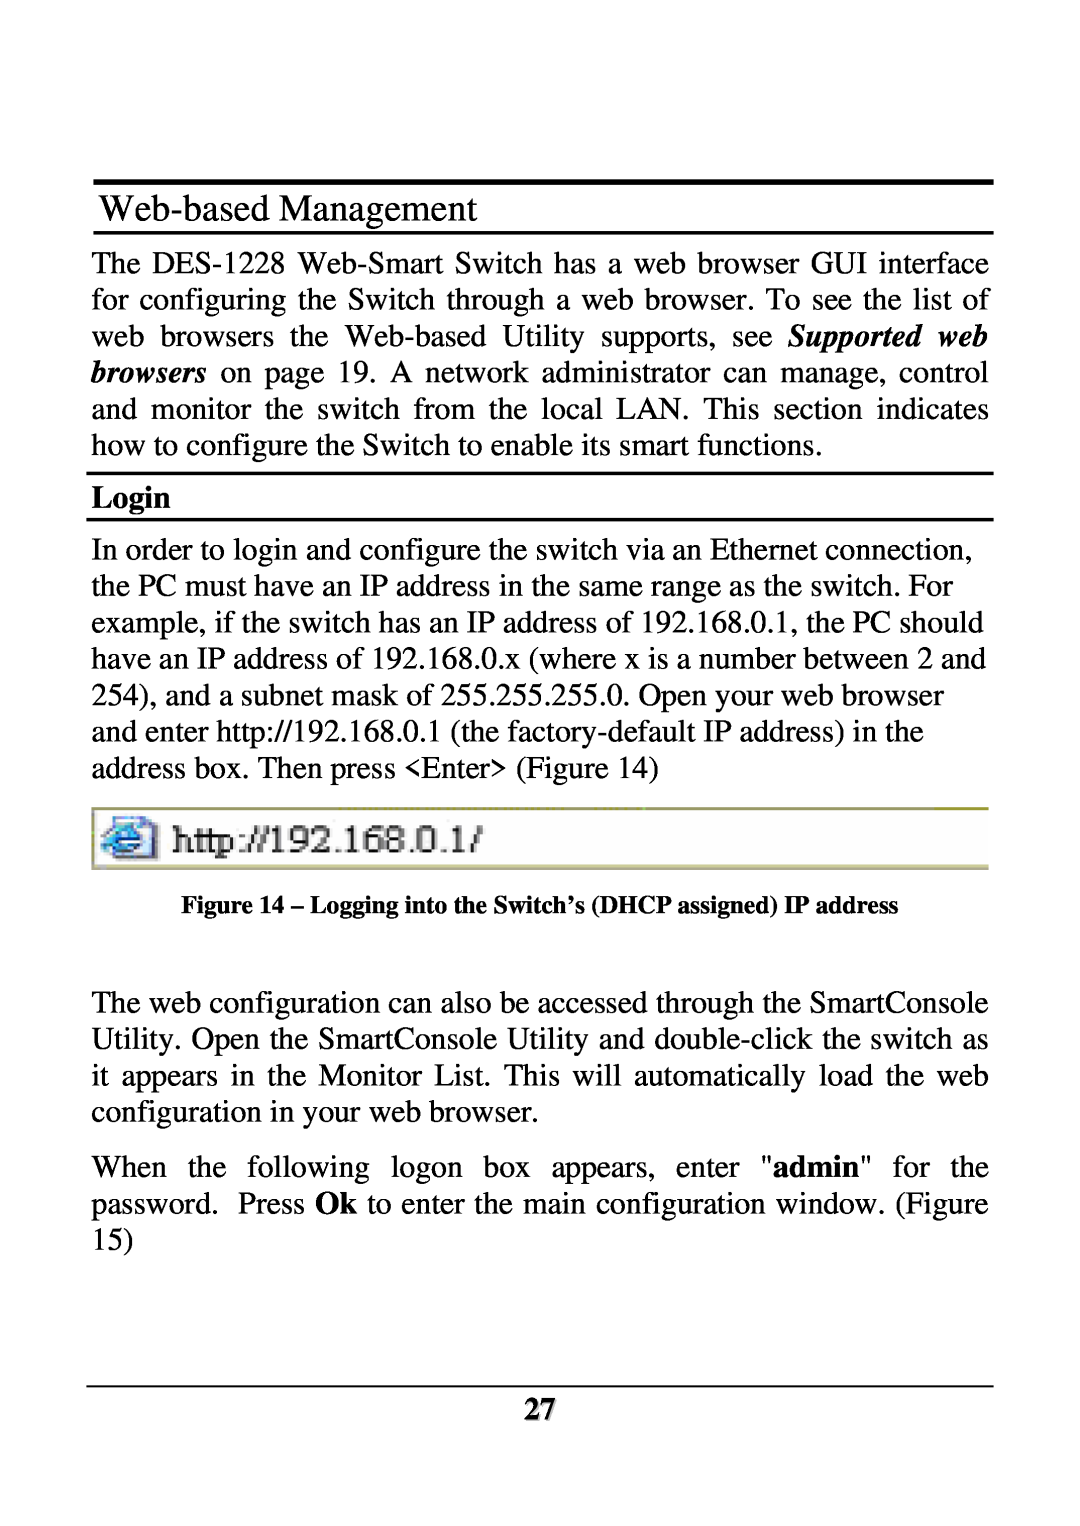 D-Link DES-1228 user manual Web-based Management, Login 